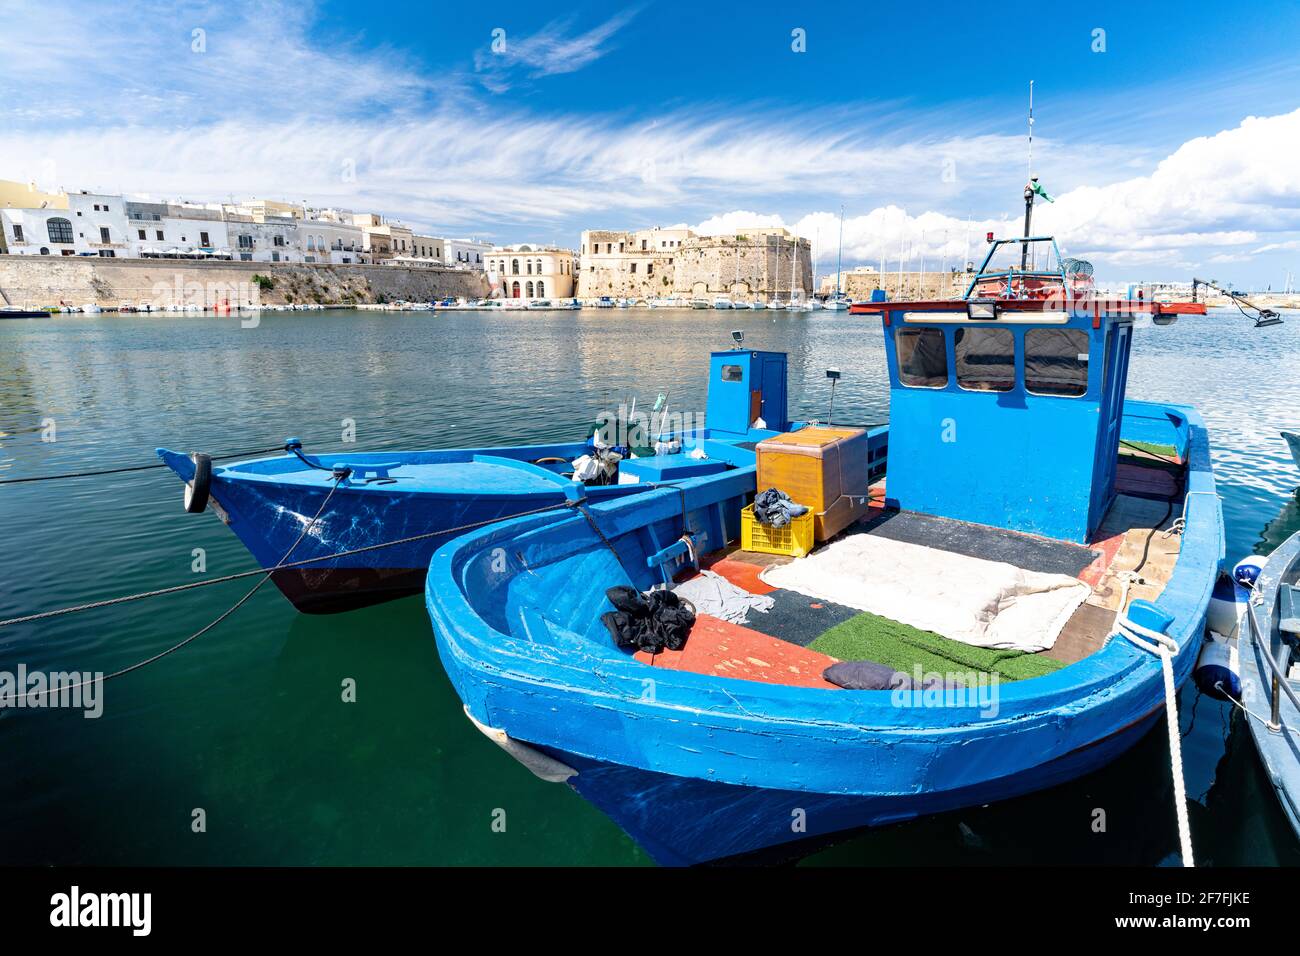 Barcos de pesca amarrados en el puerto, Gallipoli, provincia de Lecce, Salento, Apulia, Italia, Europa Foto de stock